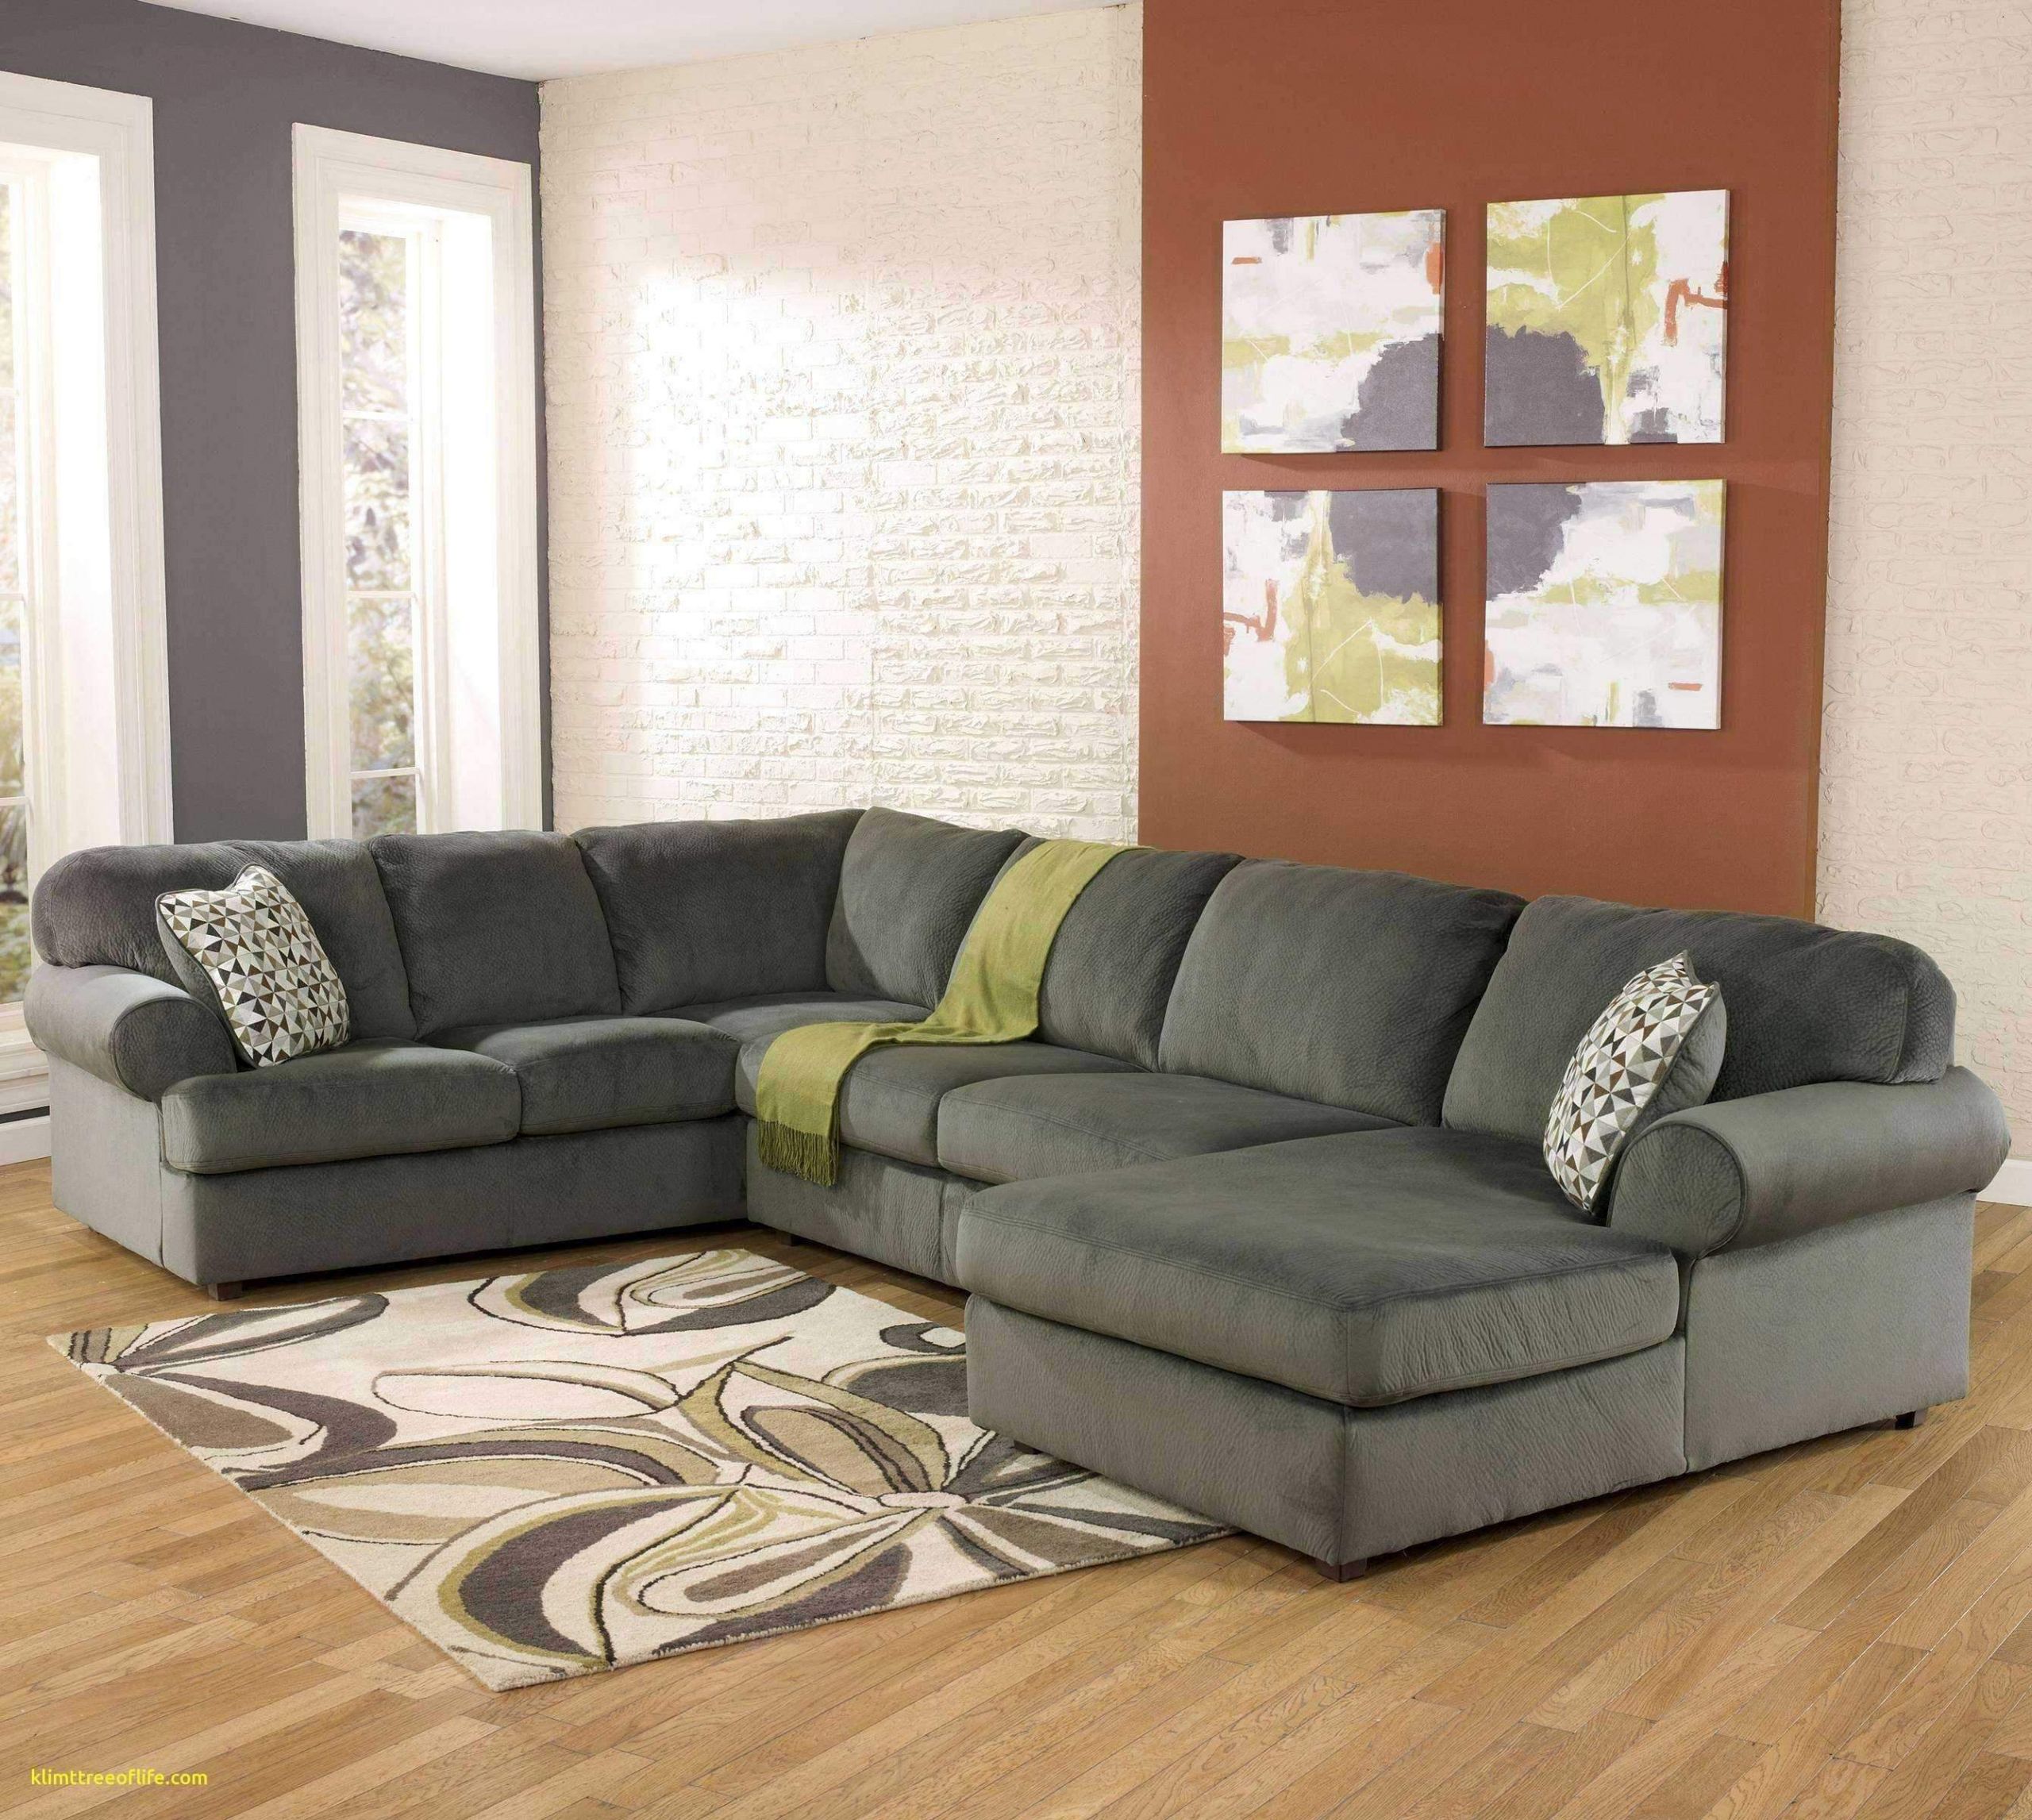 wohnzimmer couch gunstig schon 40 luxus von sofa klein gunstig ideen of wohnzimmer couch gunstig